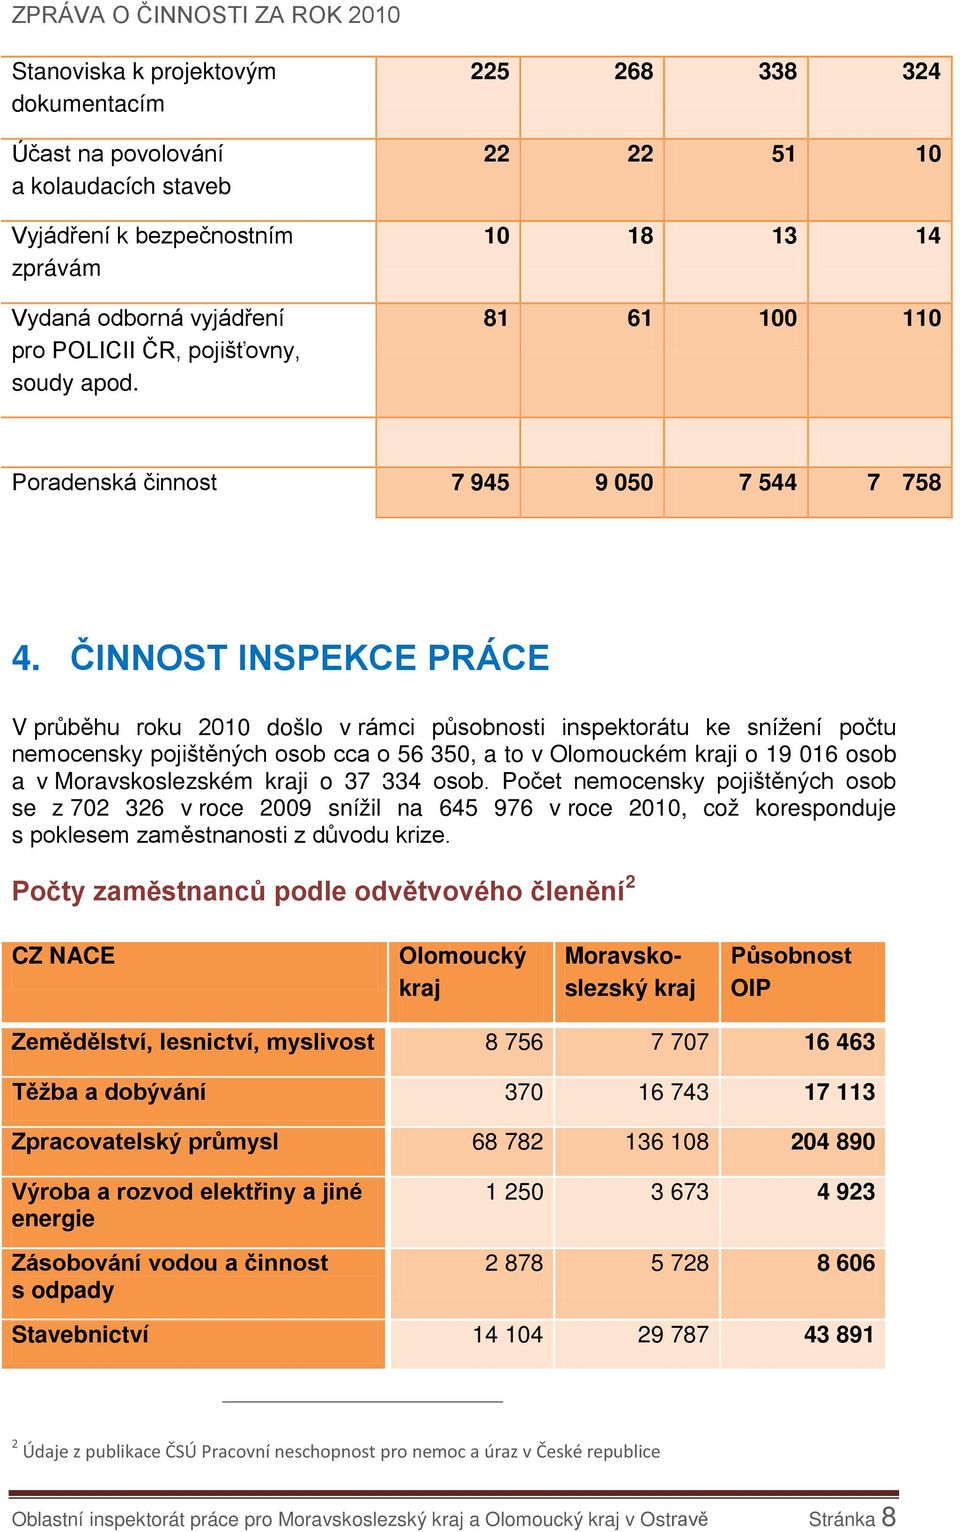 ČINNOST INSPEKCE PRÁCE V průběhu roku 2010 došlo v rámci působnosti inspektorátu ke snížení počtu nemocensky pojištěných osob cca o 56 350, a to v Olomouckém kraji o 19 016 osob a v Moravskoslezském